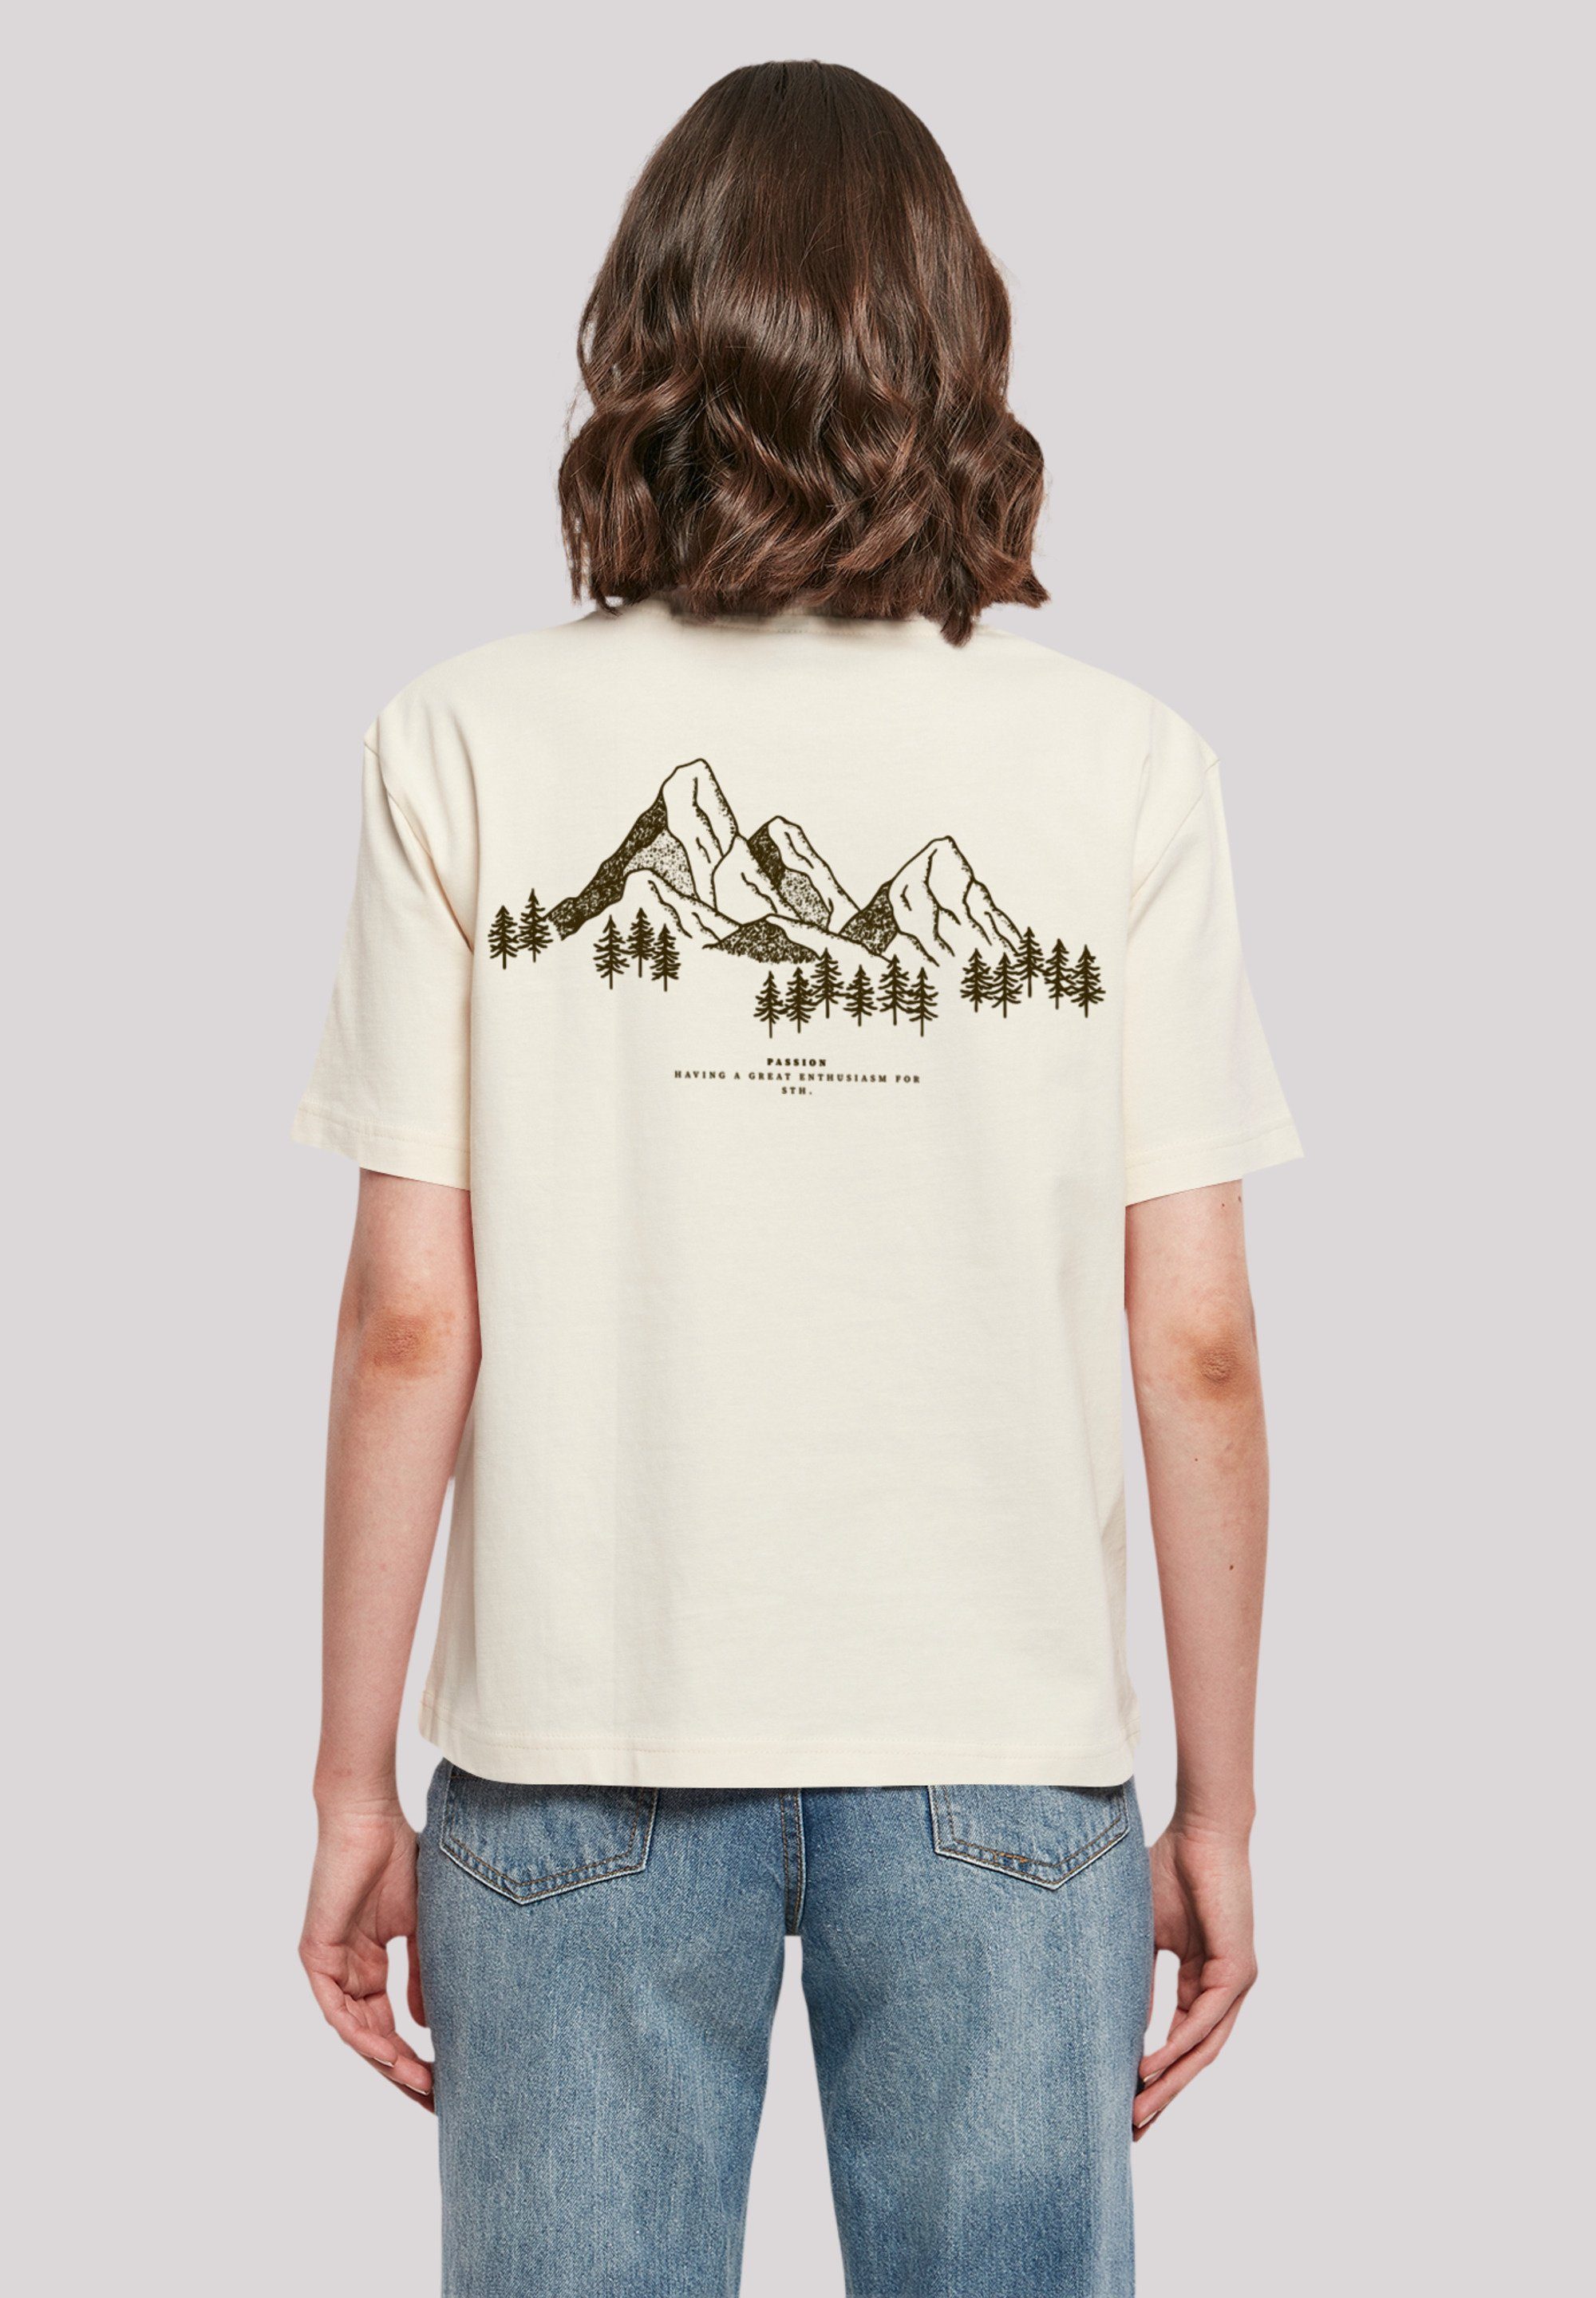 F4NT4STIC T-Shirt Mountain Print, Gerippter Look Rundhalsausschnitt für stylischen